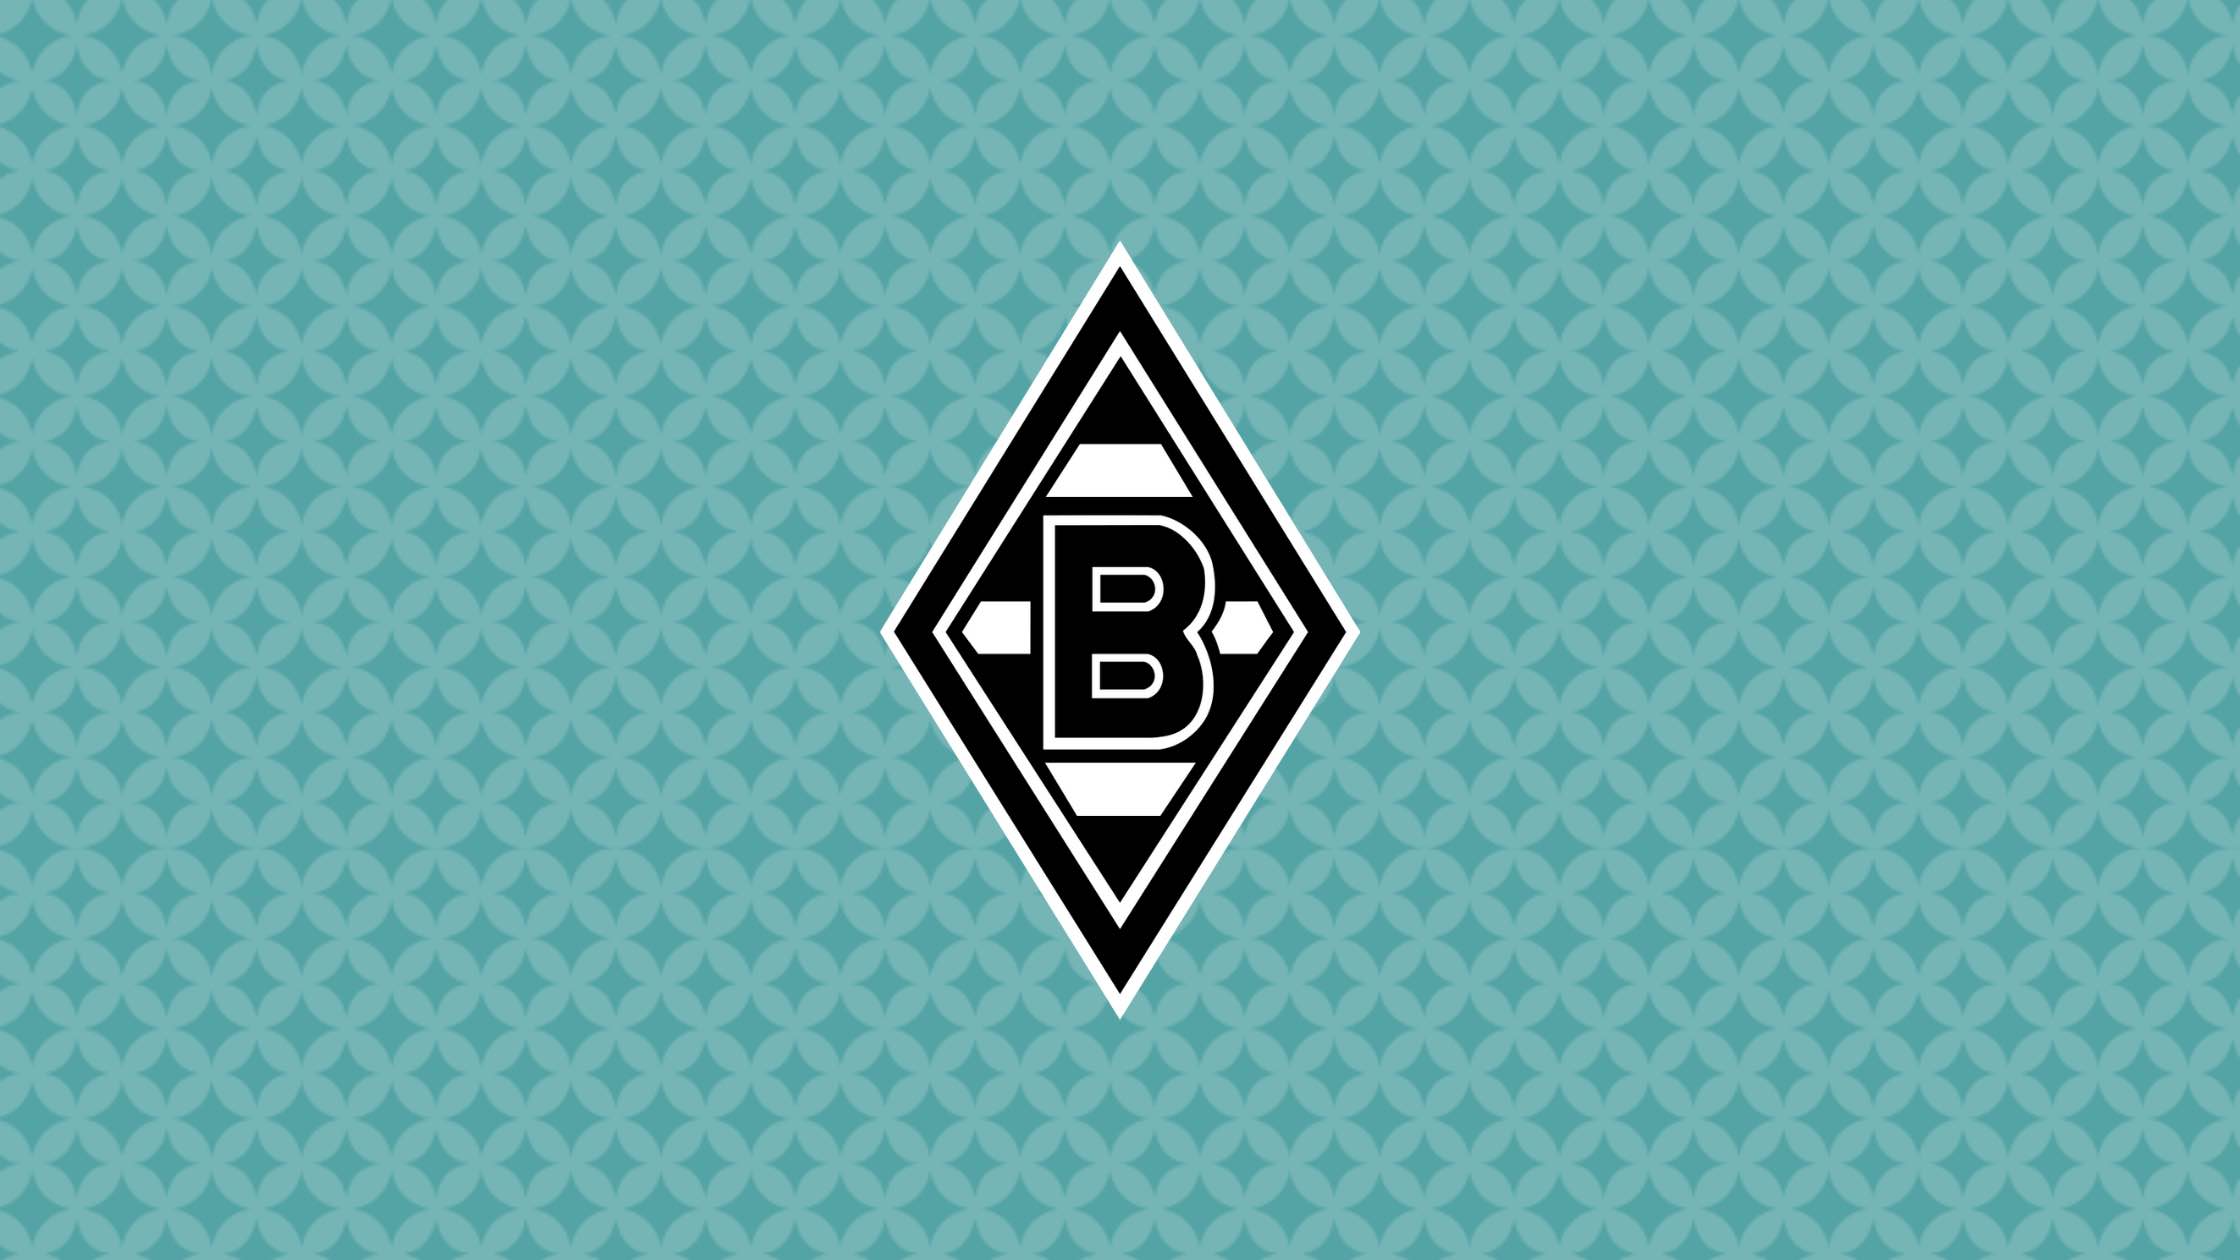 Borussia Mönchengladbach ist ein deutscher Traditionsverein in der Champions League